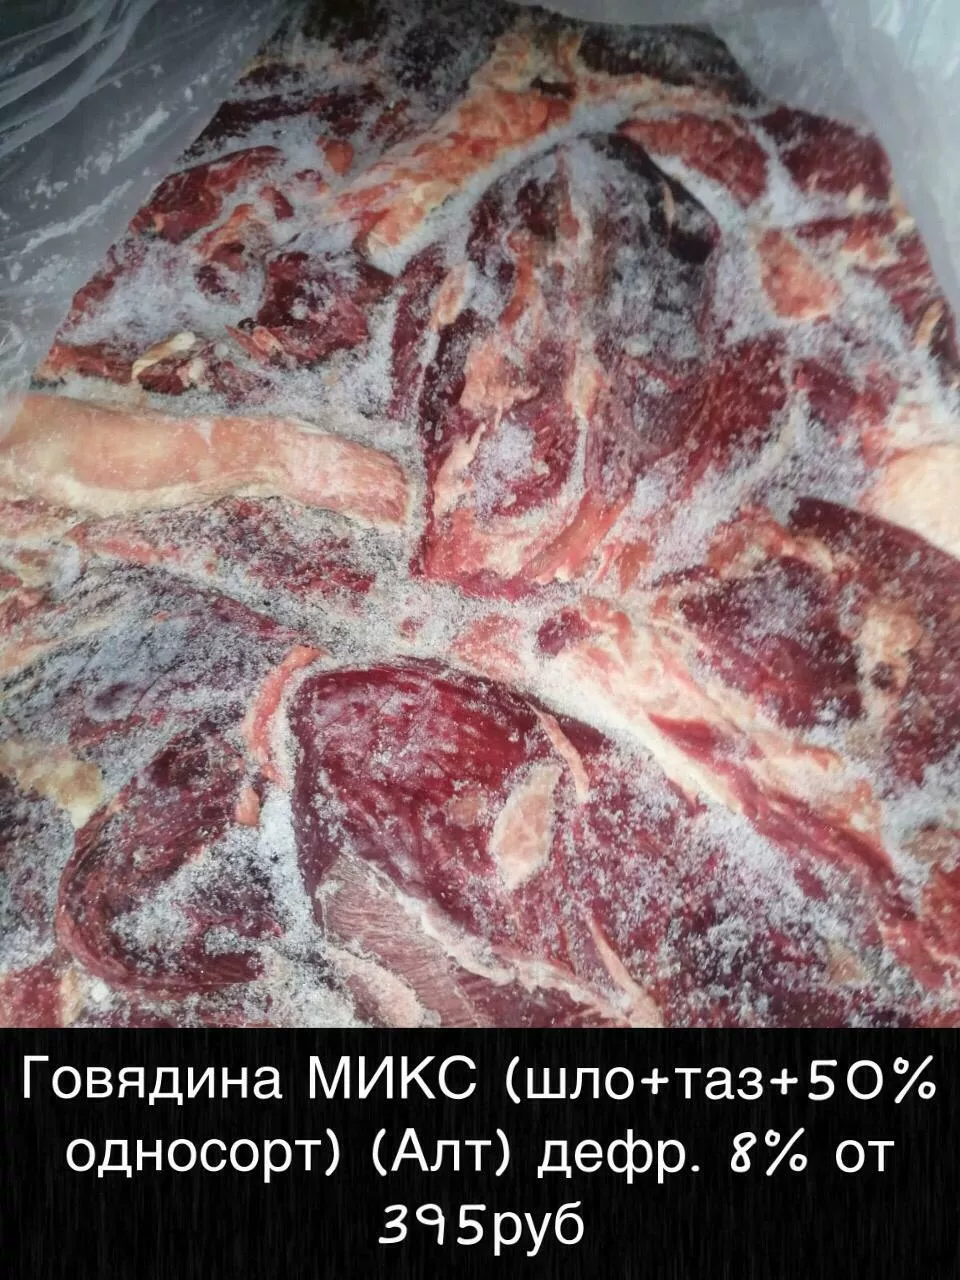 мясо говядина доставим до вашего региона в Улане-Удэ 3